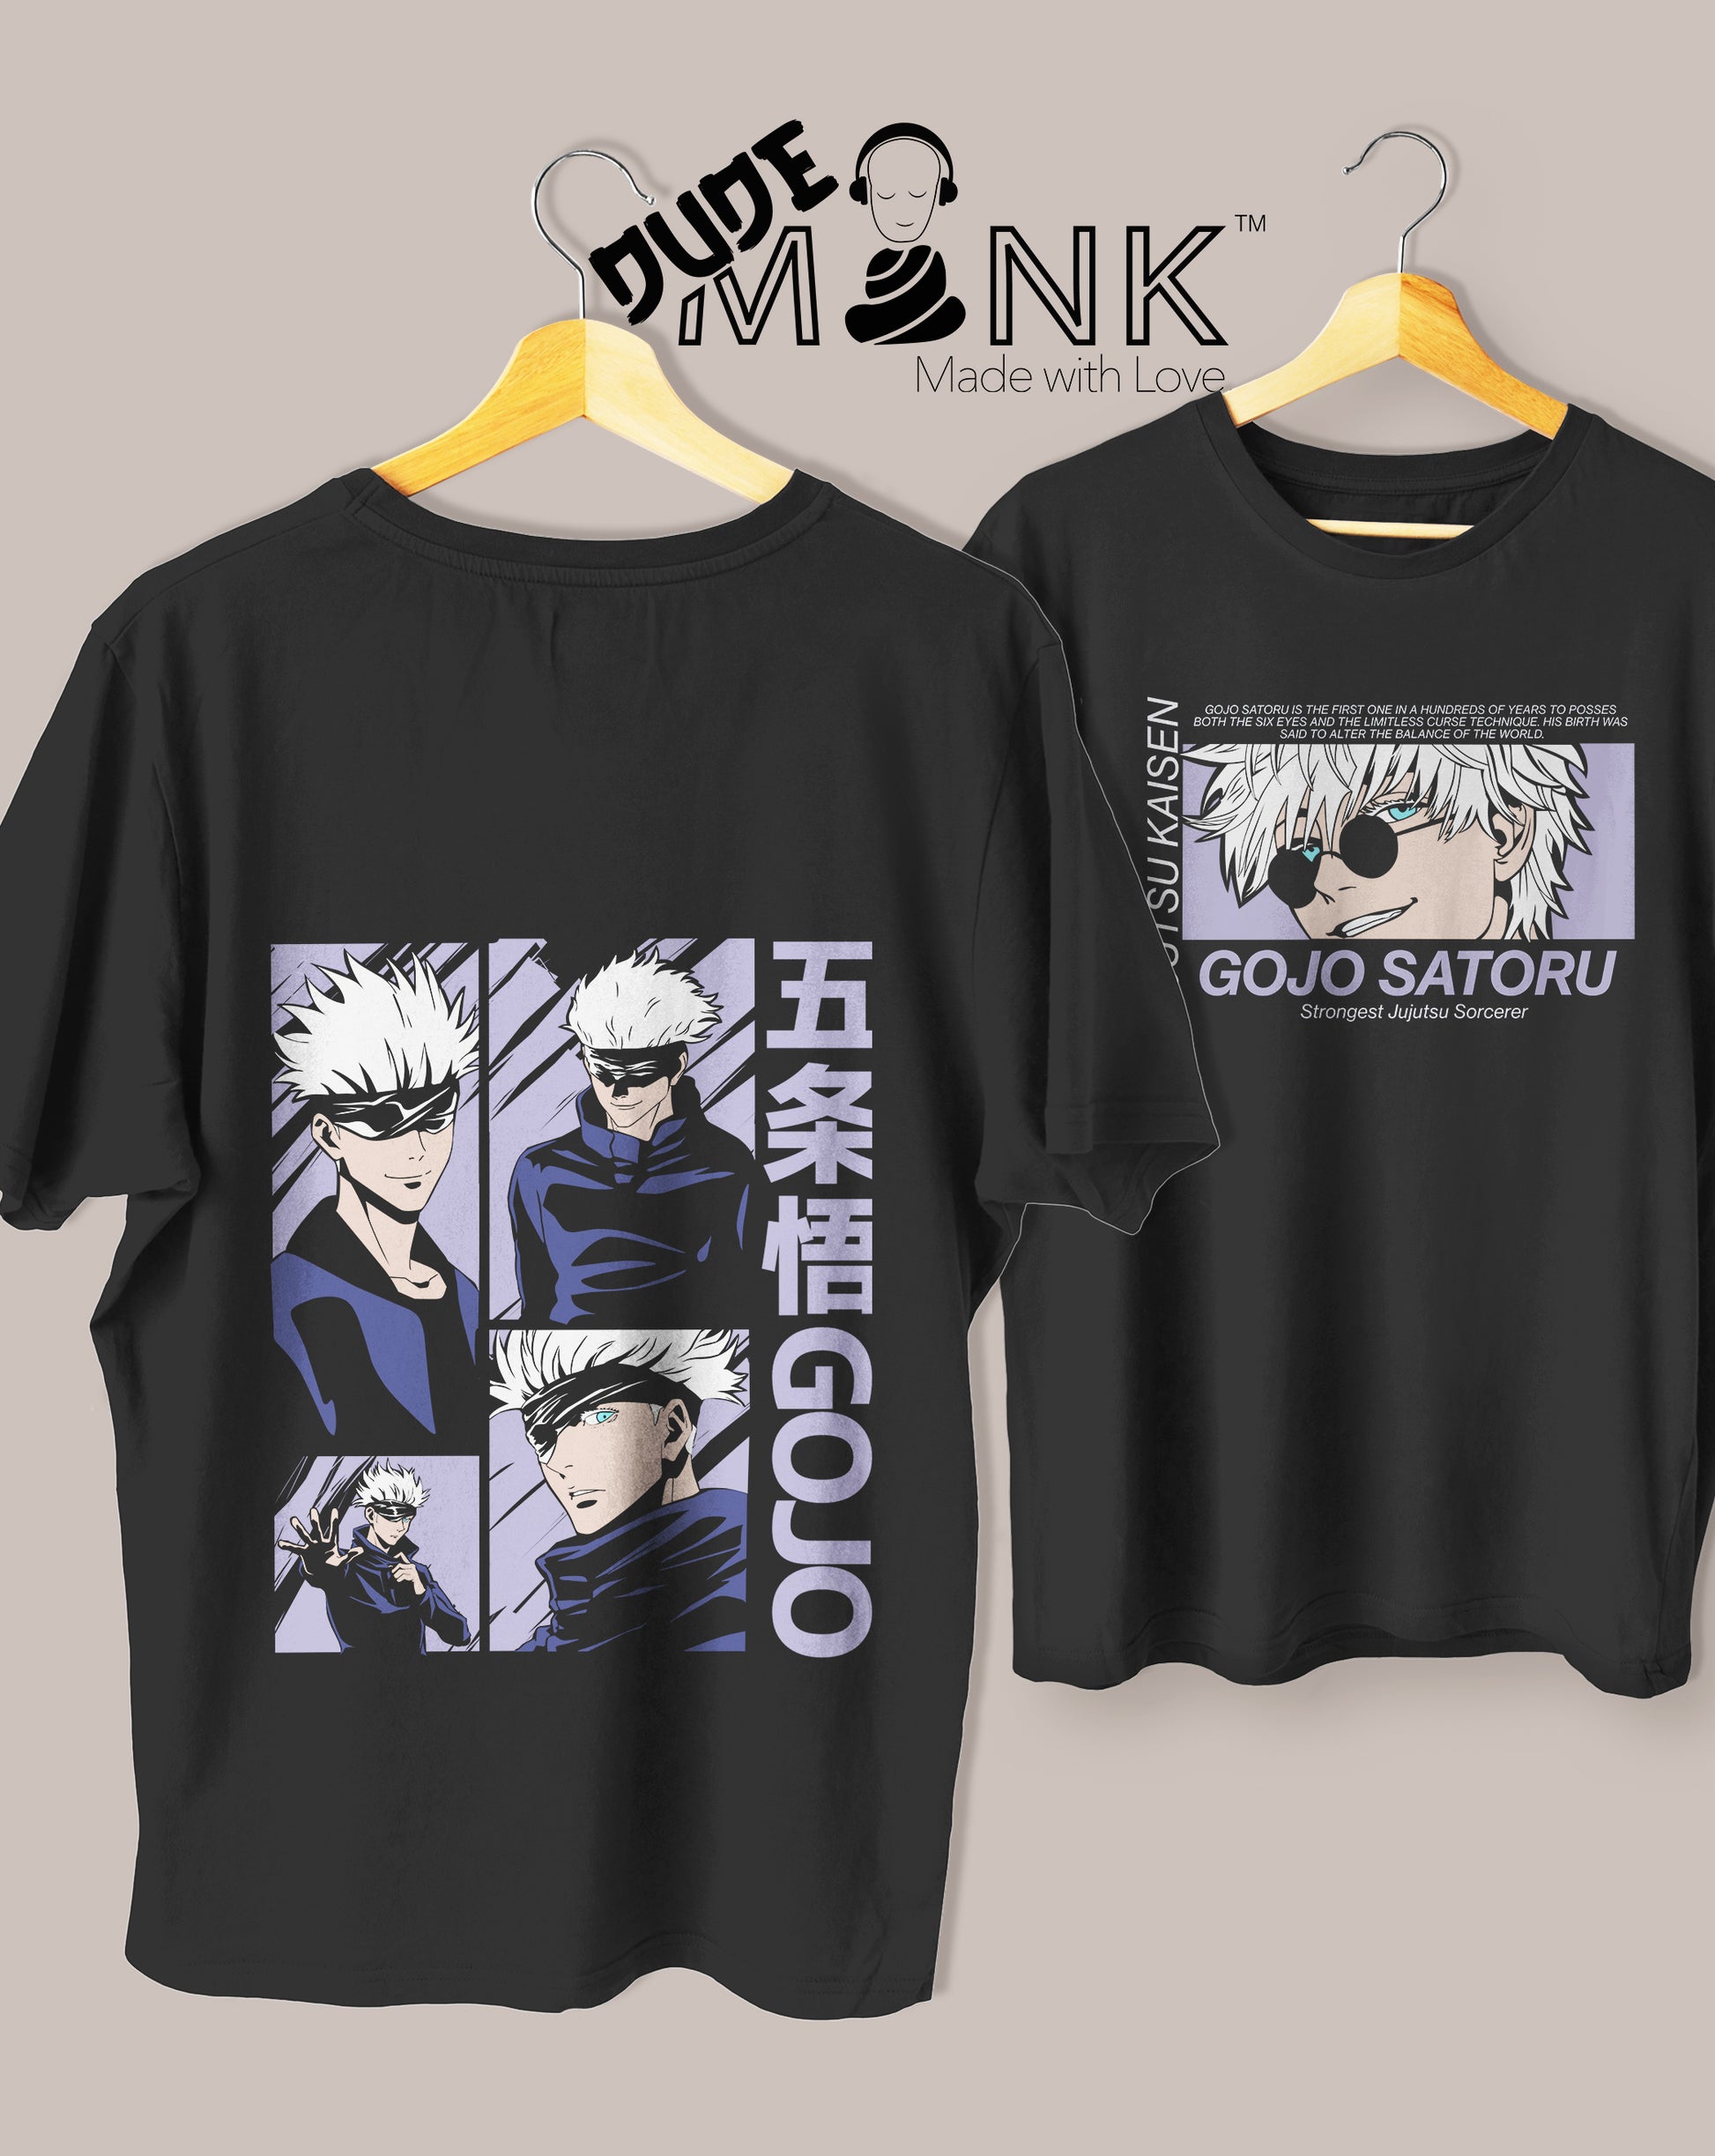 Gojo Satoru JJK Oversized T-Shirt – Dudemonk